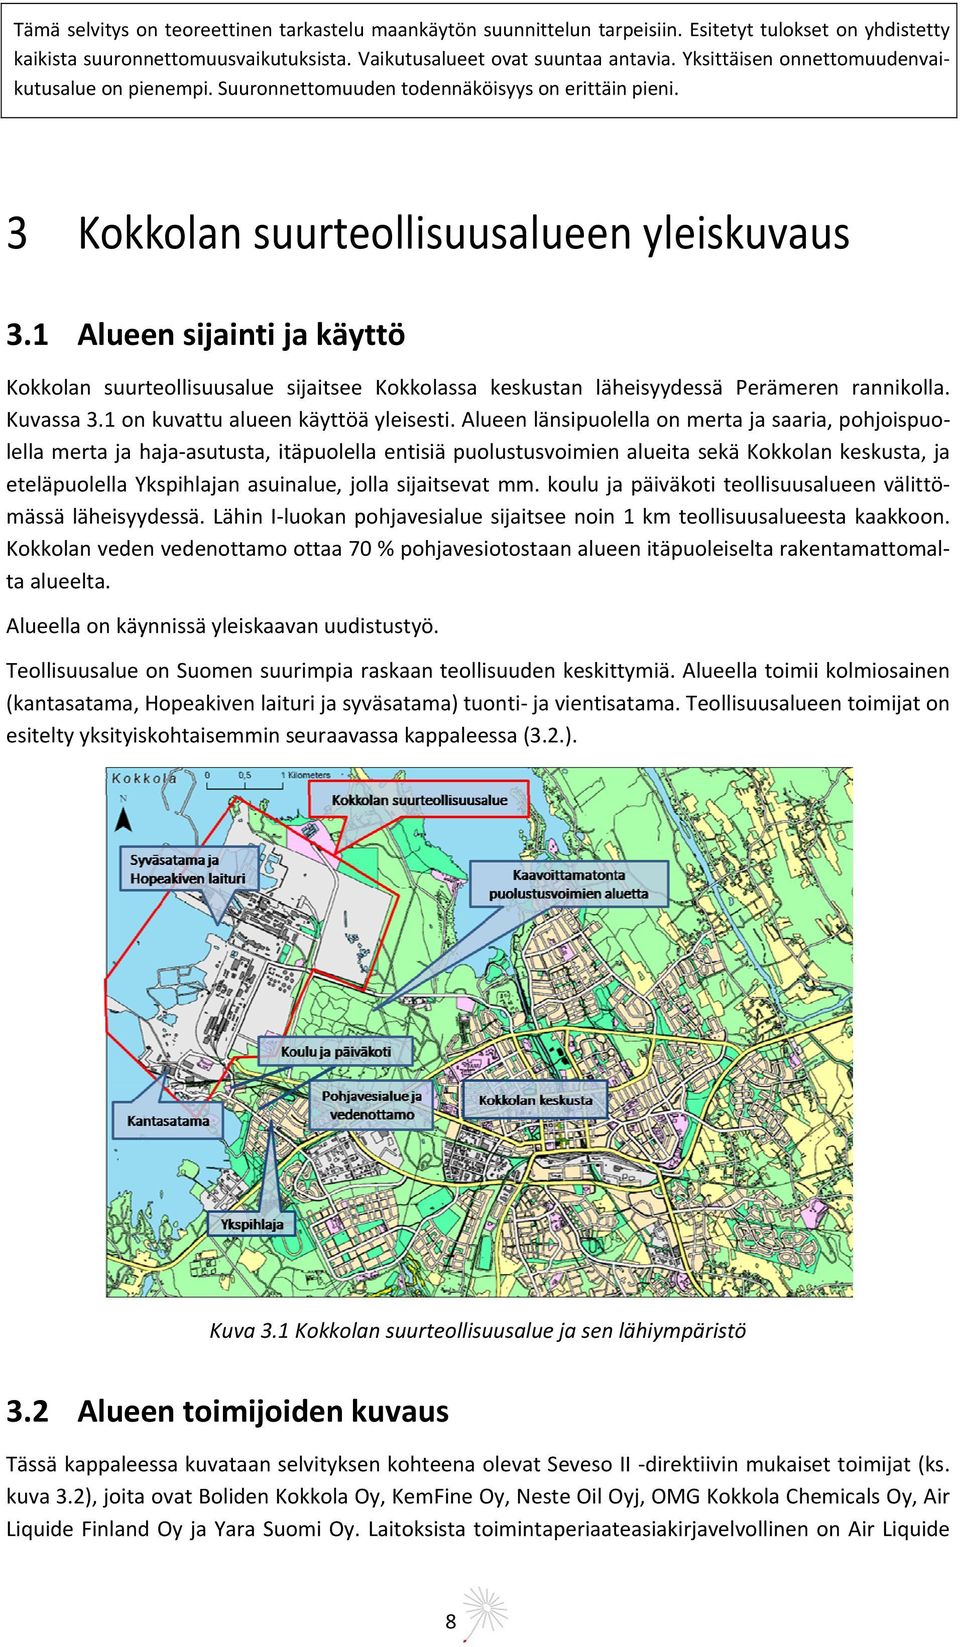 1 Alueen sijainti ja käyttö Kokkolan suurteollisuusalue sijaitsee Kokkolassa keskustan läheisyydessä Perämeren rannikolla. Kuvassa 3.1 on kuvattu alueen käyttöä yleisesti.